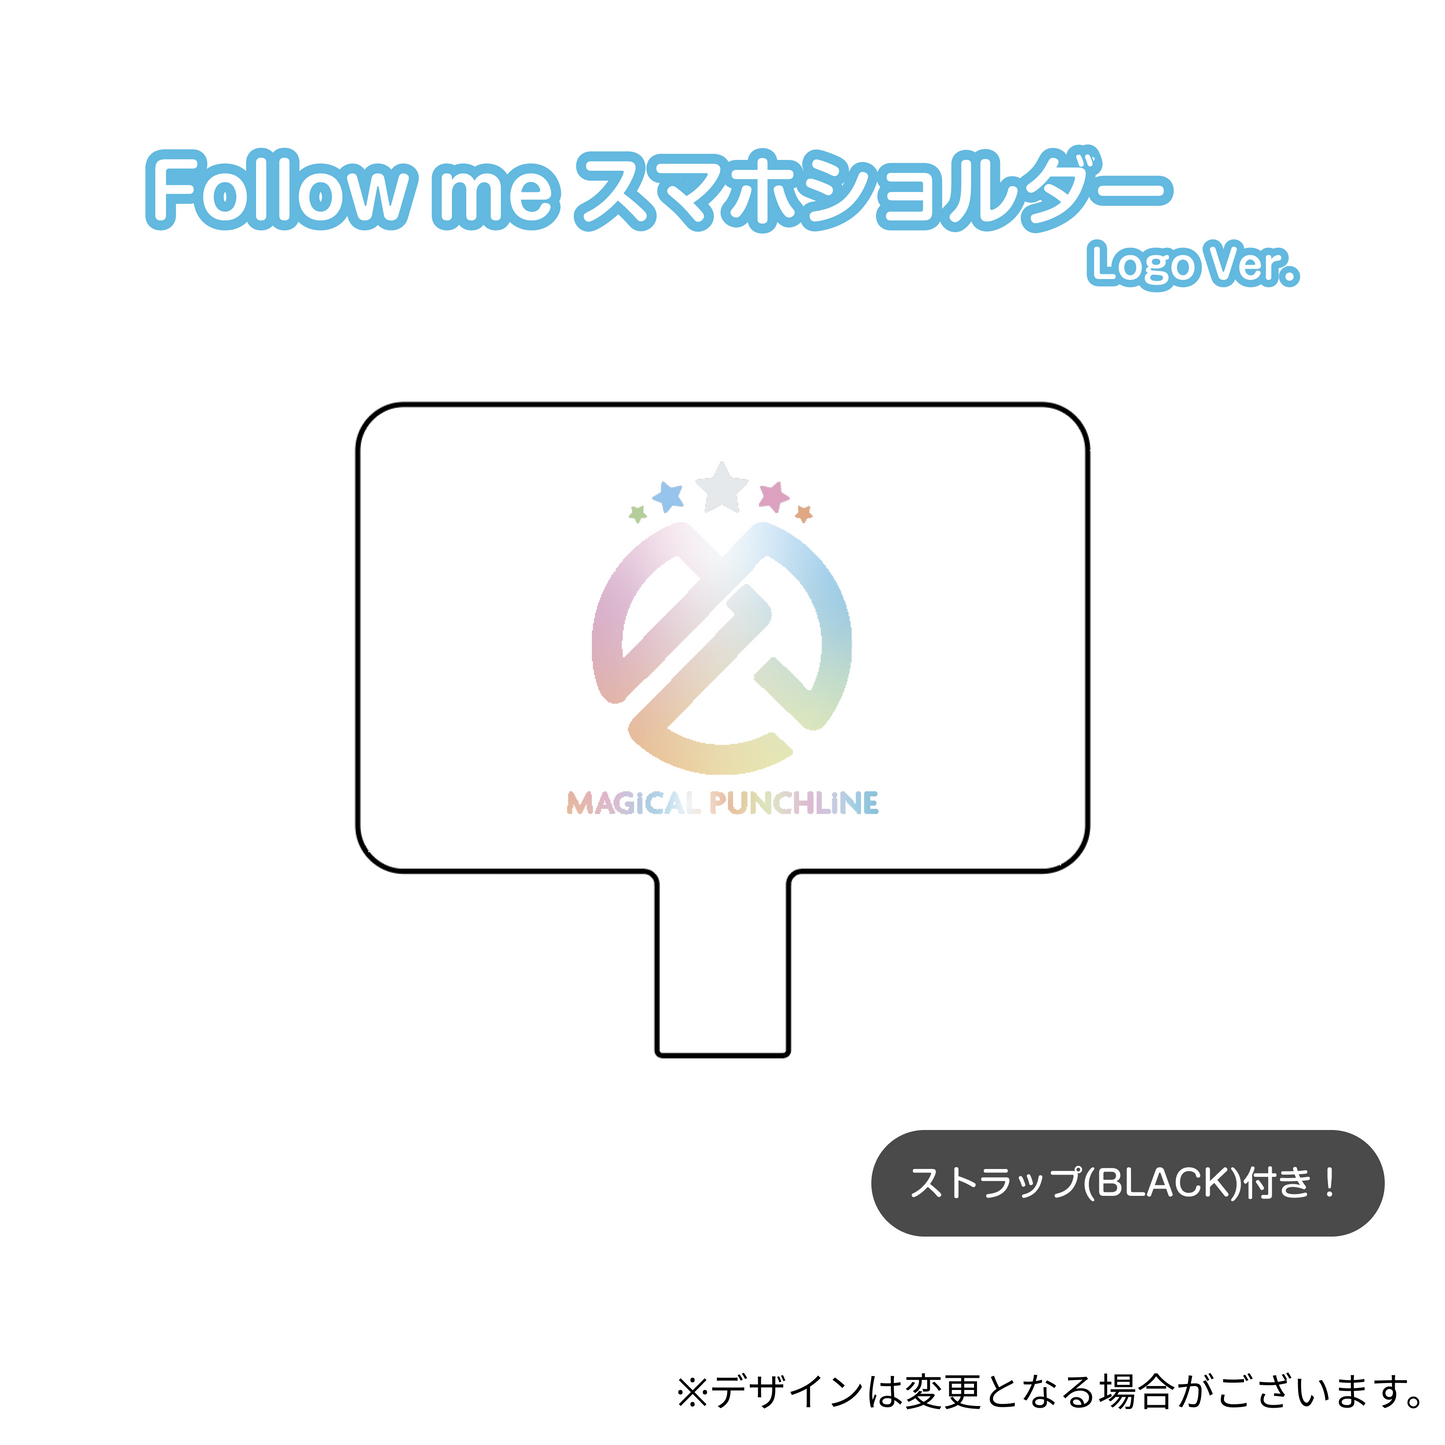 Follow me スマホショルダー Logo Ver.